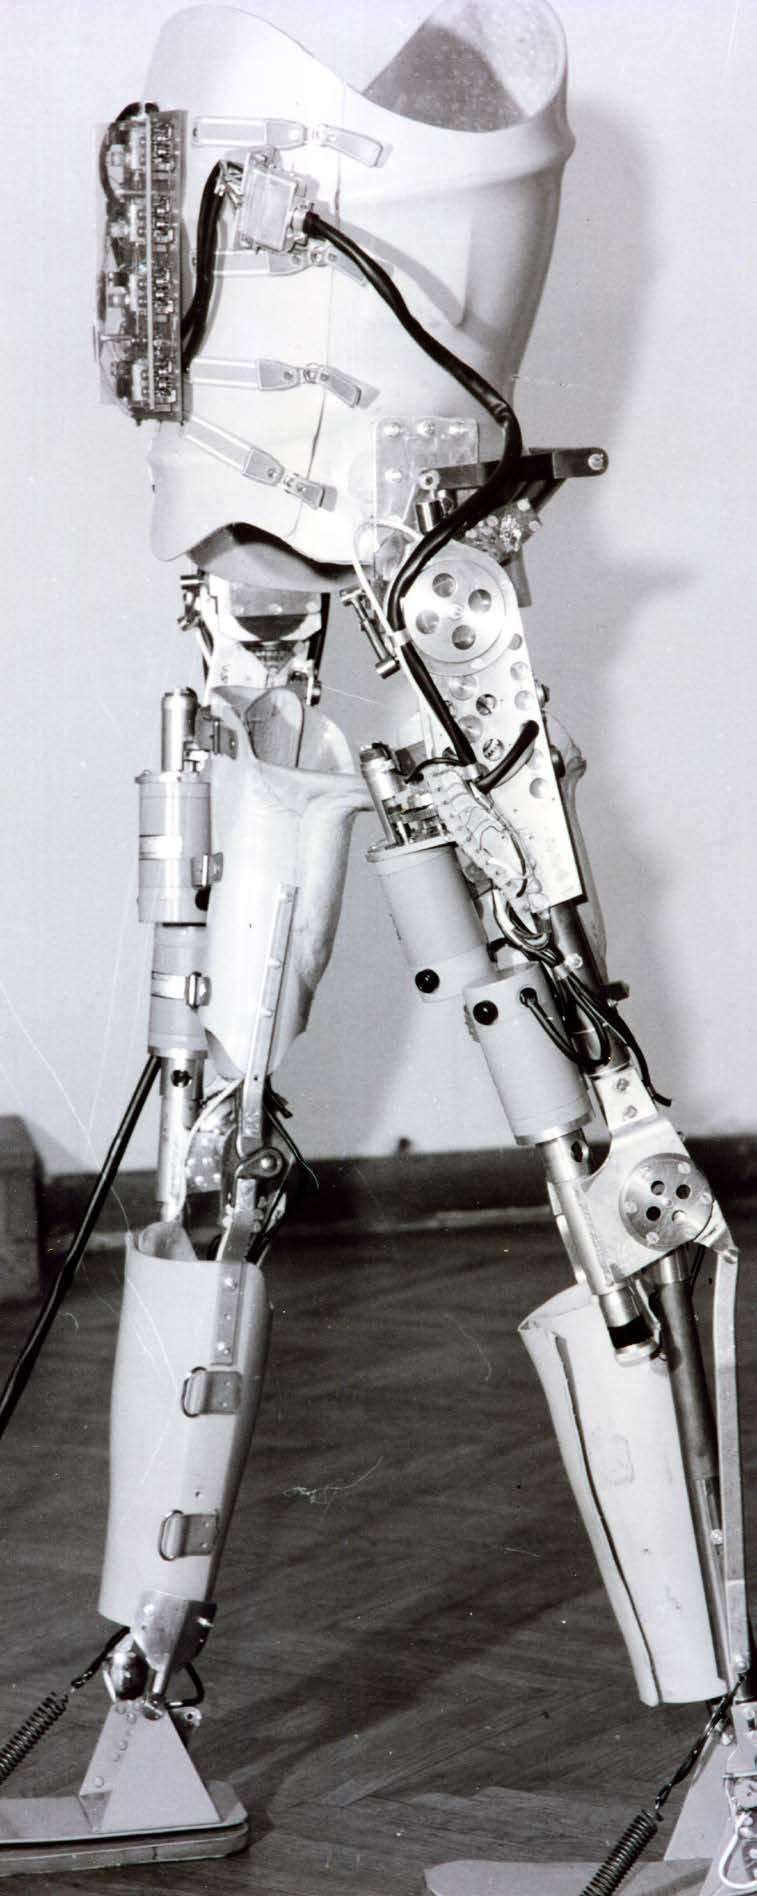 Практични резултати у области рехабилитационе роботике резултирали су развојем и конструкцијом првих оперативних активних егзоскелета у свету (1969 1974) намењених рехабилитацији хода параплегичара,